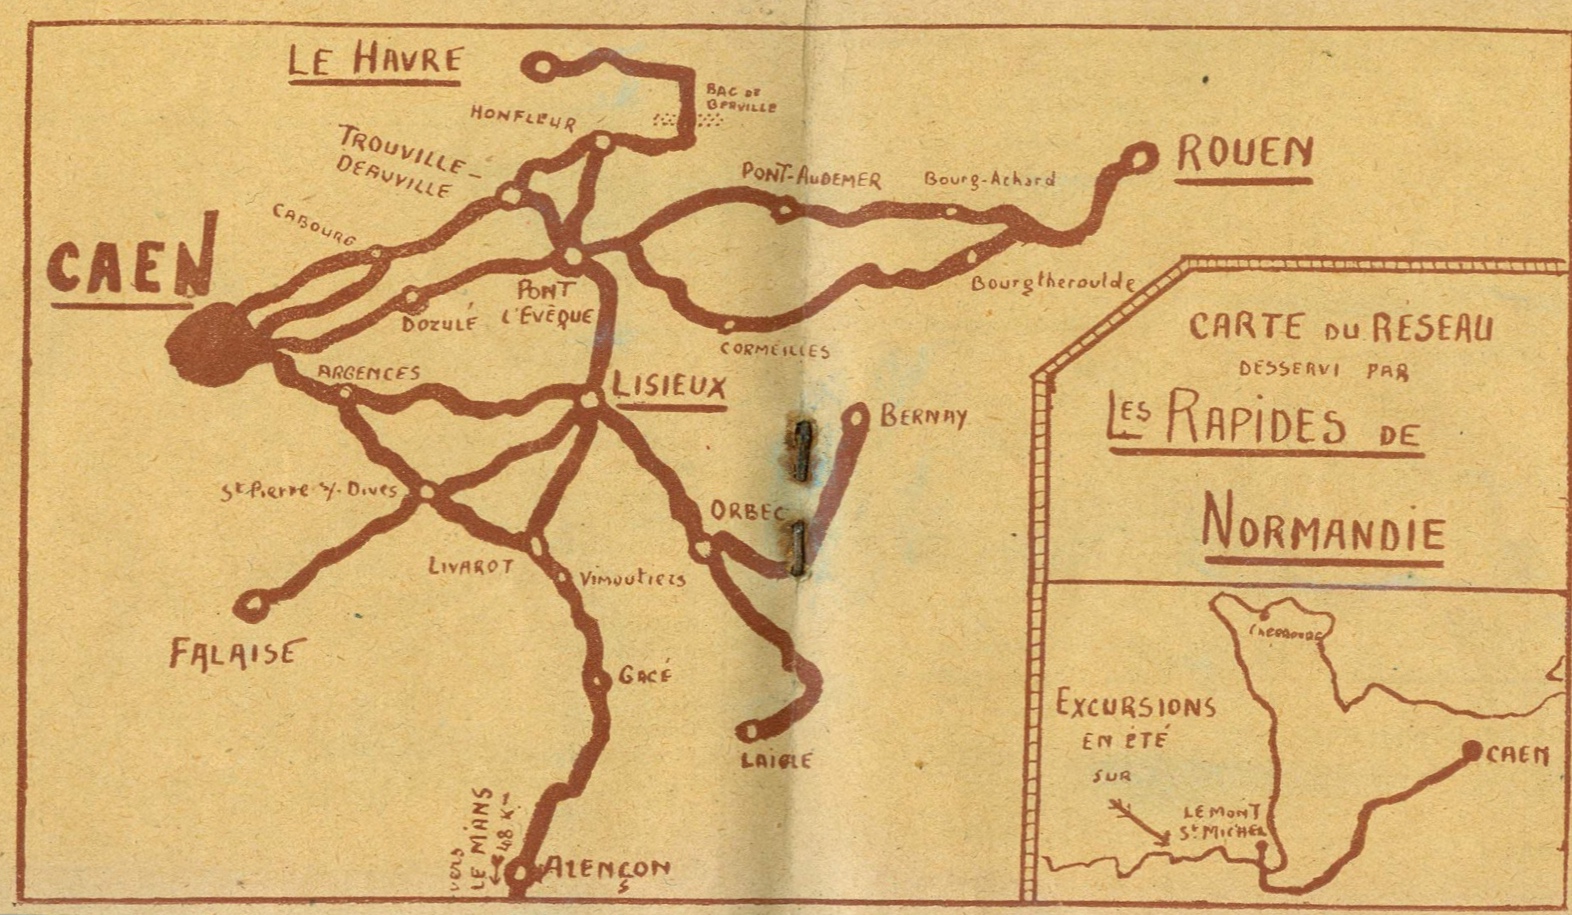 1934 map of Rapides de Normandie routes